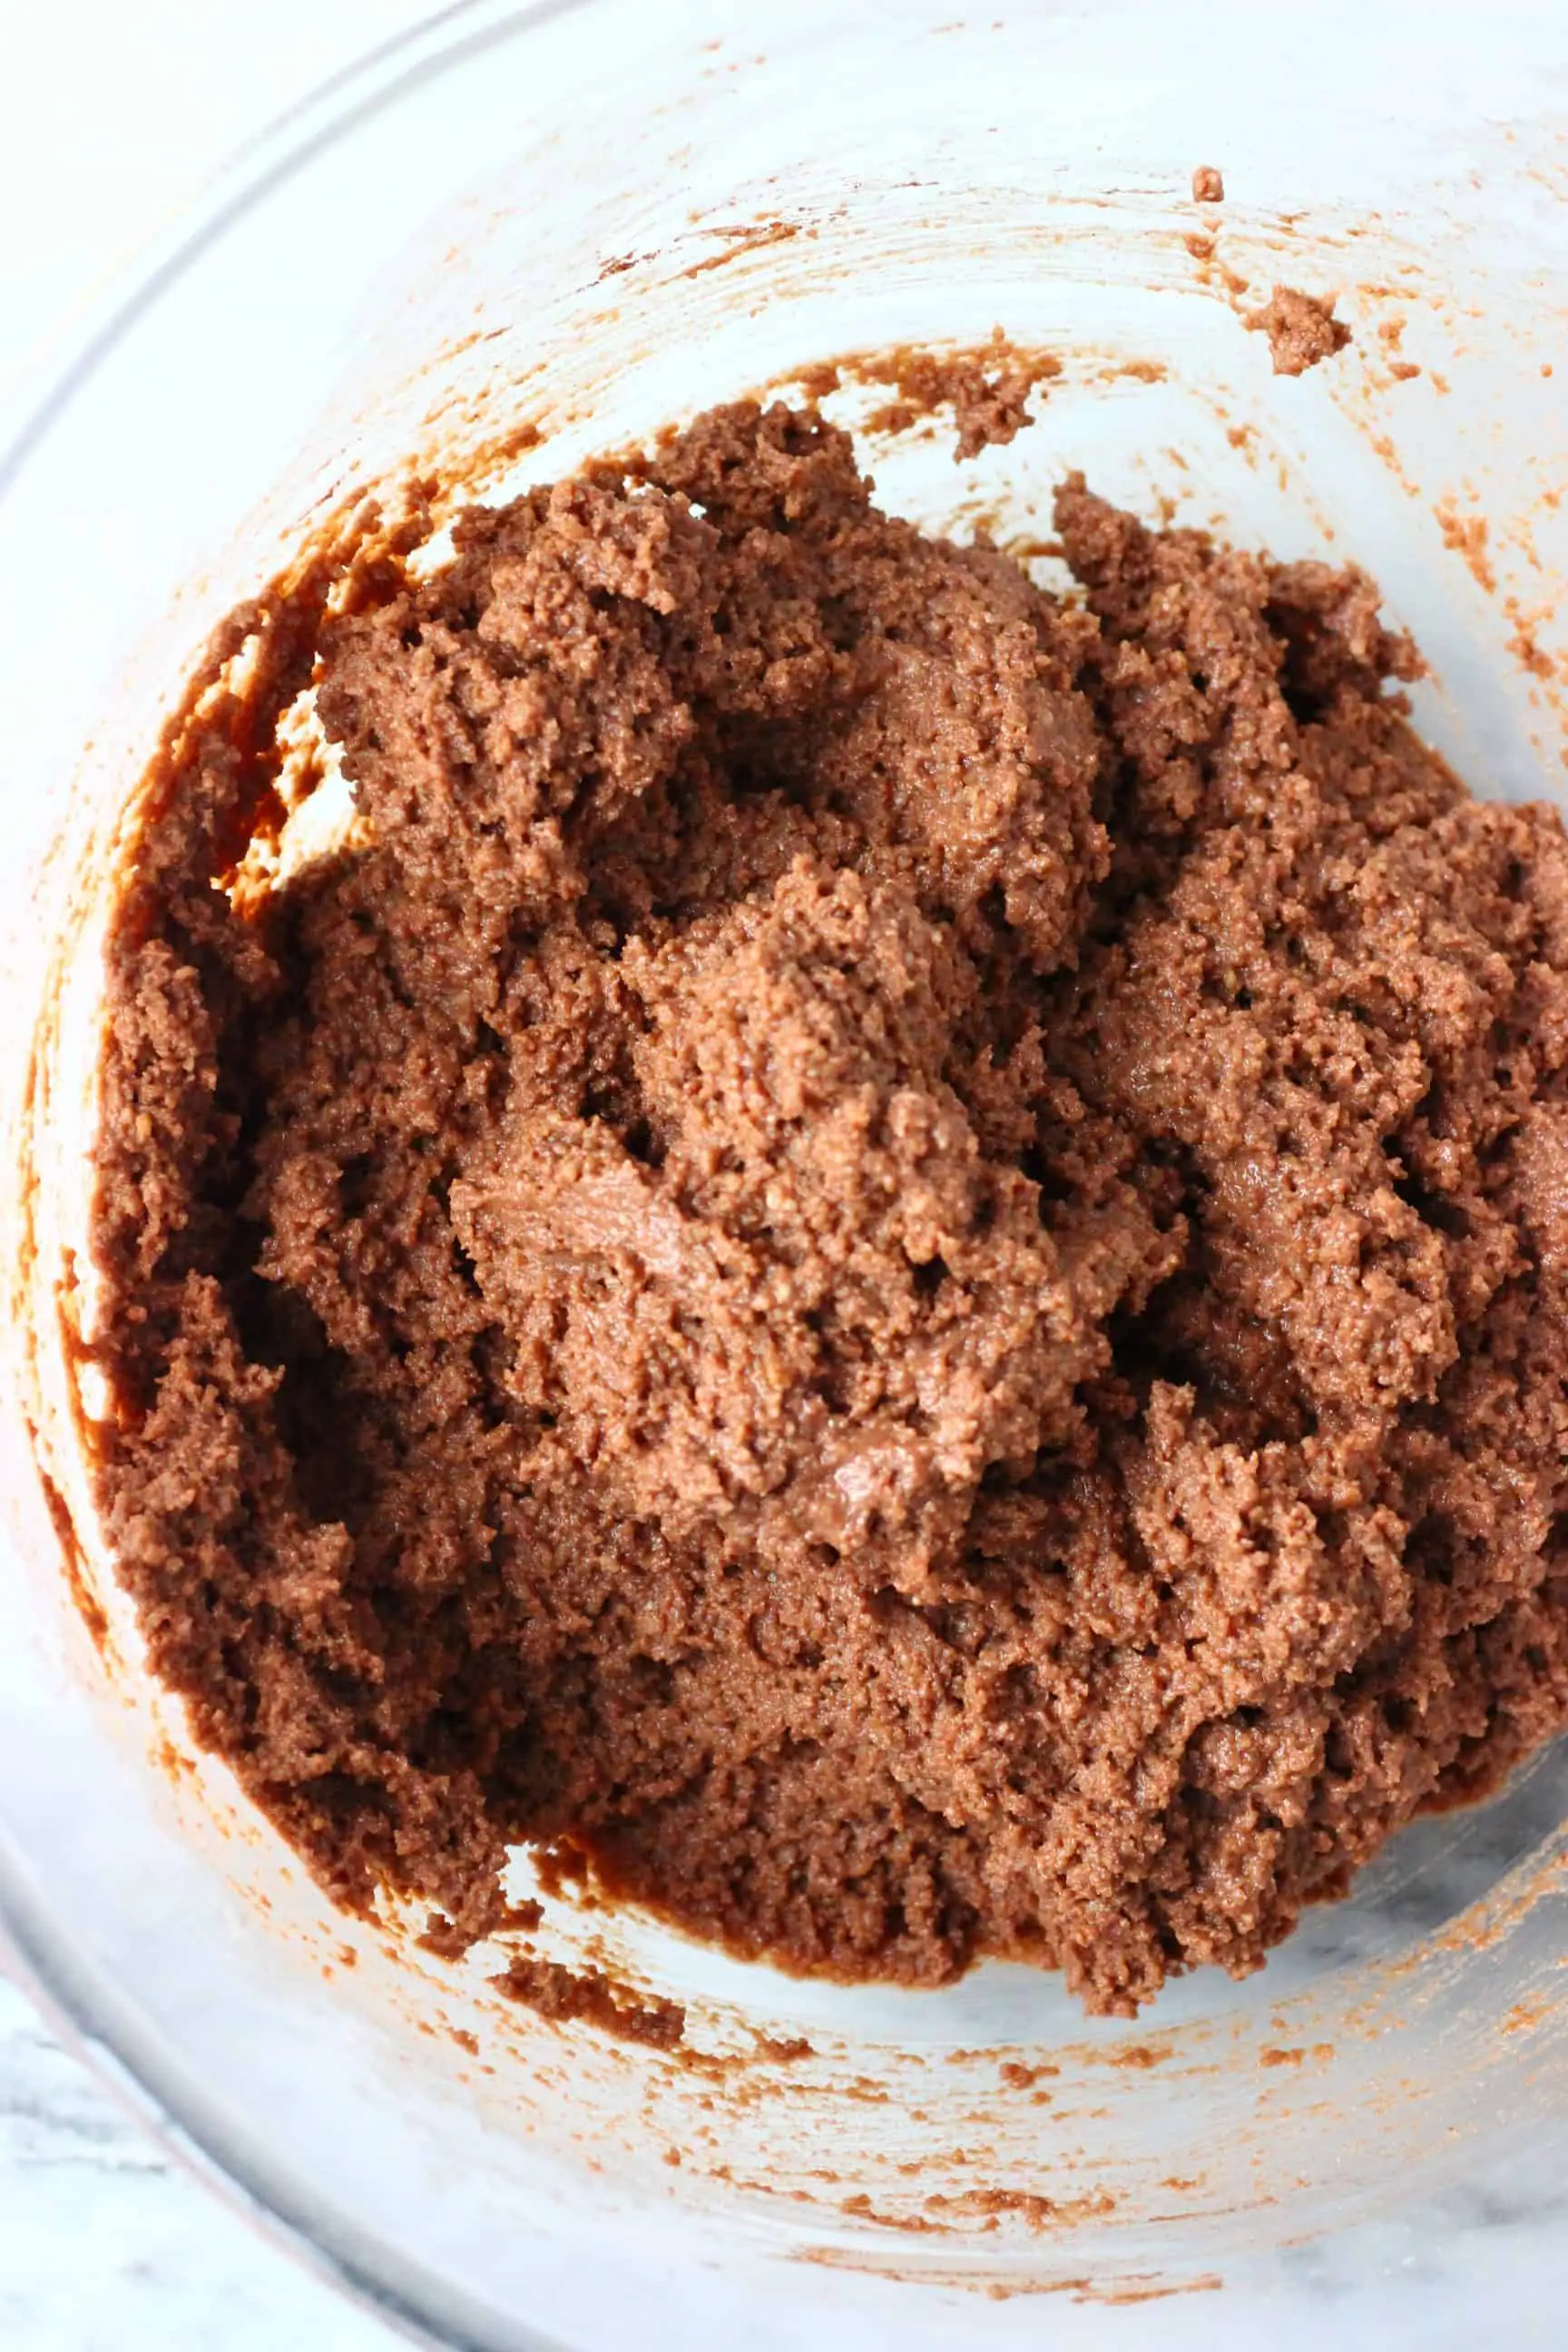 Gluten-free vegan chocolate cake batter in a mixing bowl